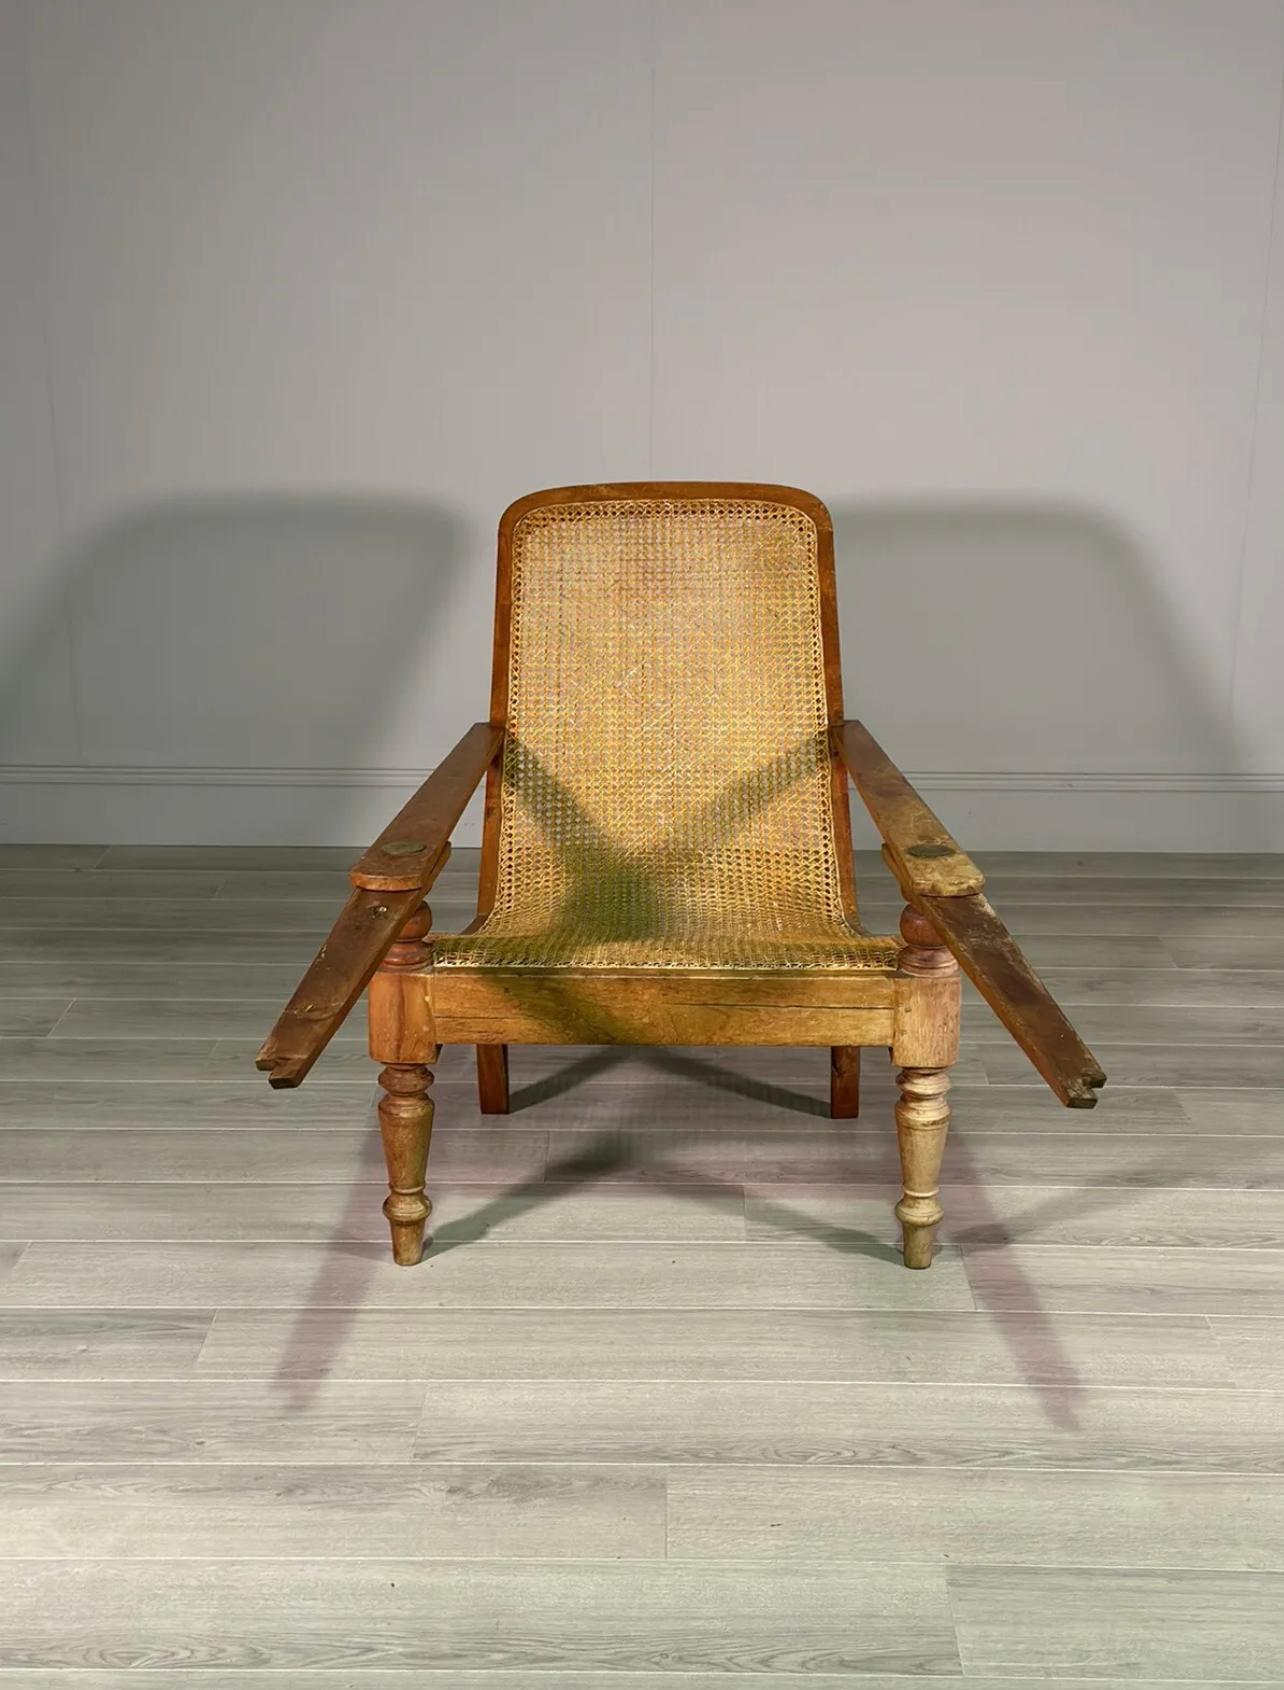 Chaise de plantation du début du 20e siècle, en bois de bouleau, avec un siège en rotin qui présente une très petite réparation. La chaise est de grande taille avec des repose-jambes extra-longs. Il s'agit d'un bel exemple en très bon état.

Hauteur